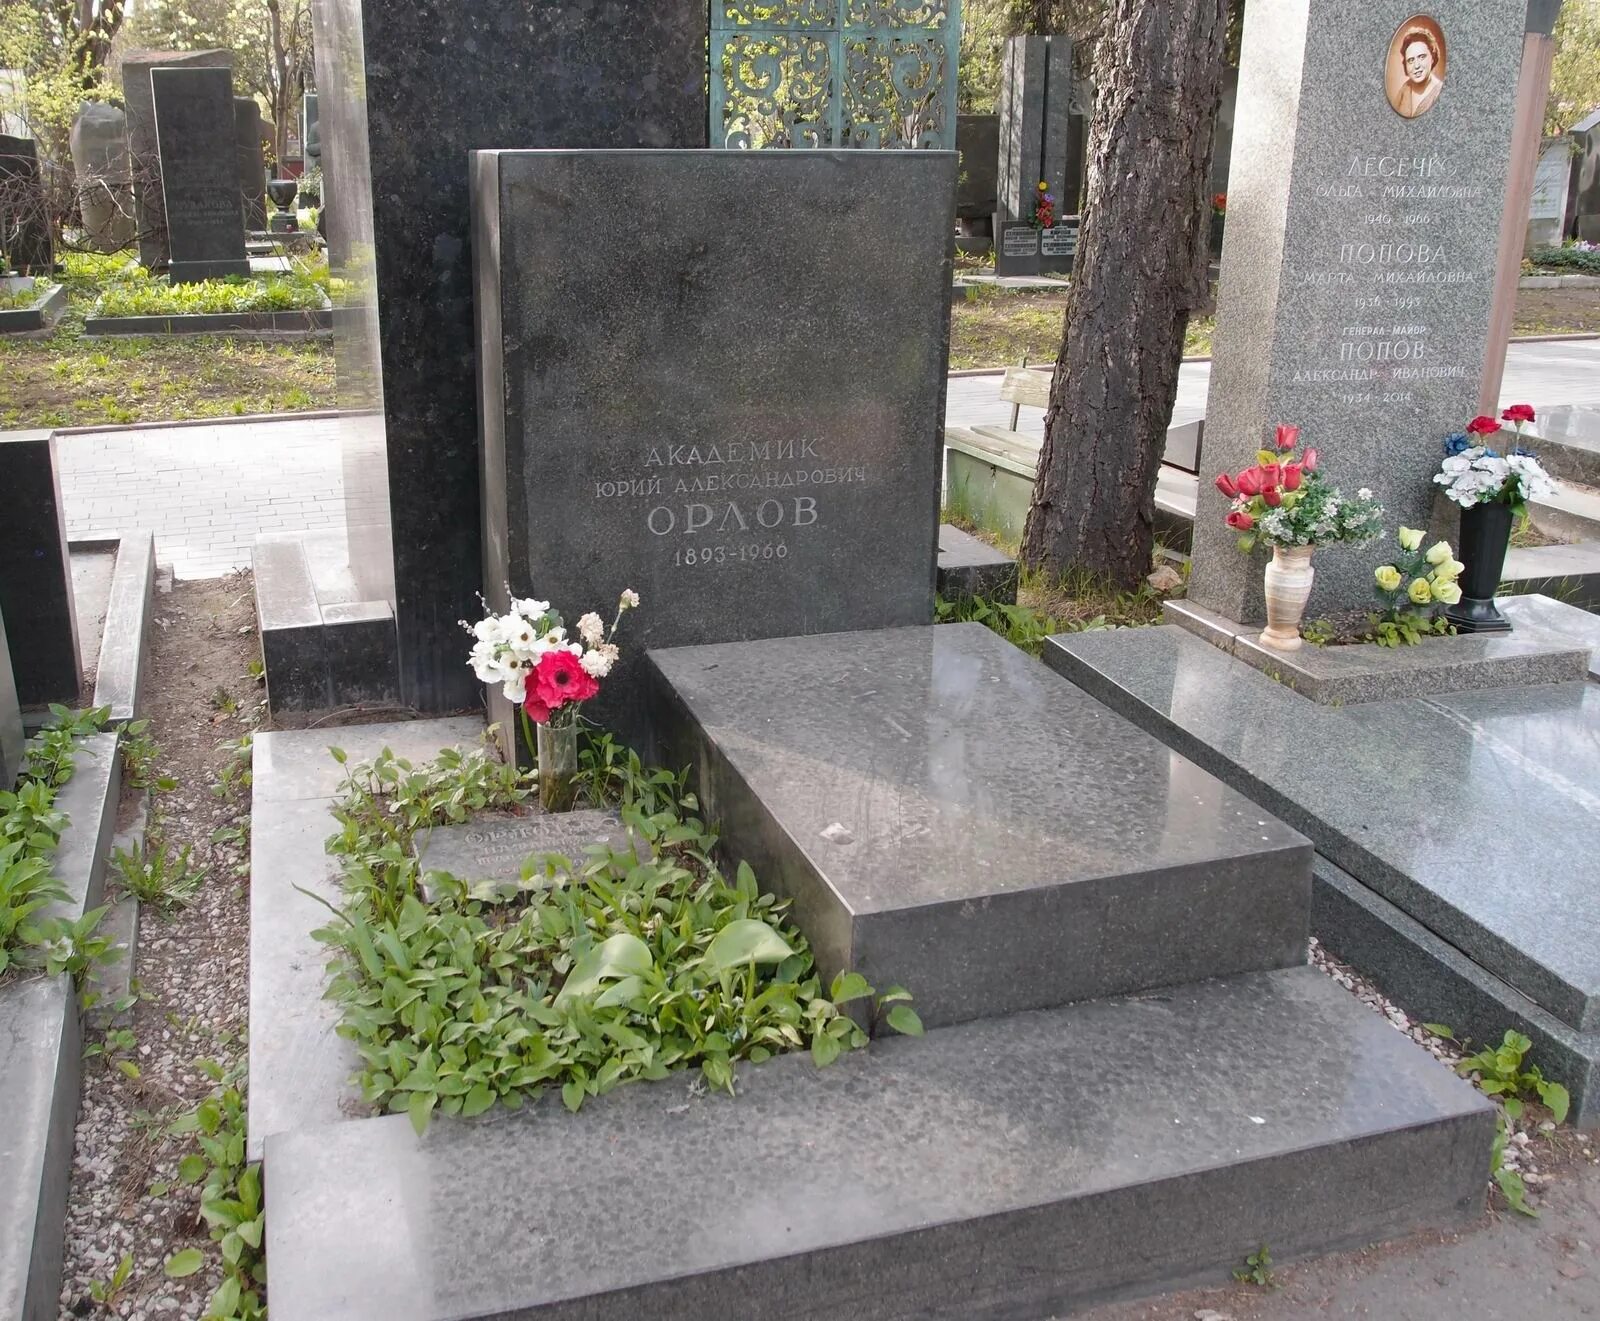 Здесь похоронен Орлов.